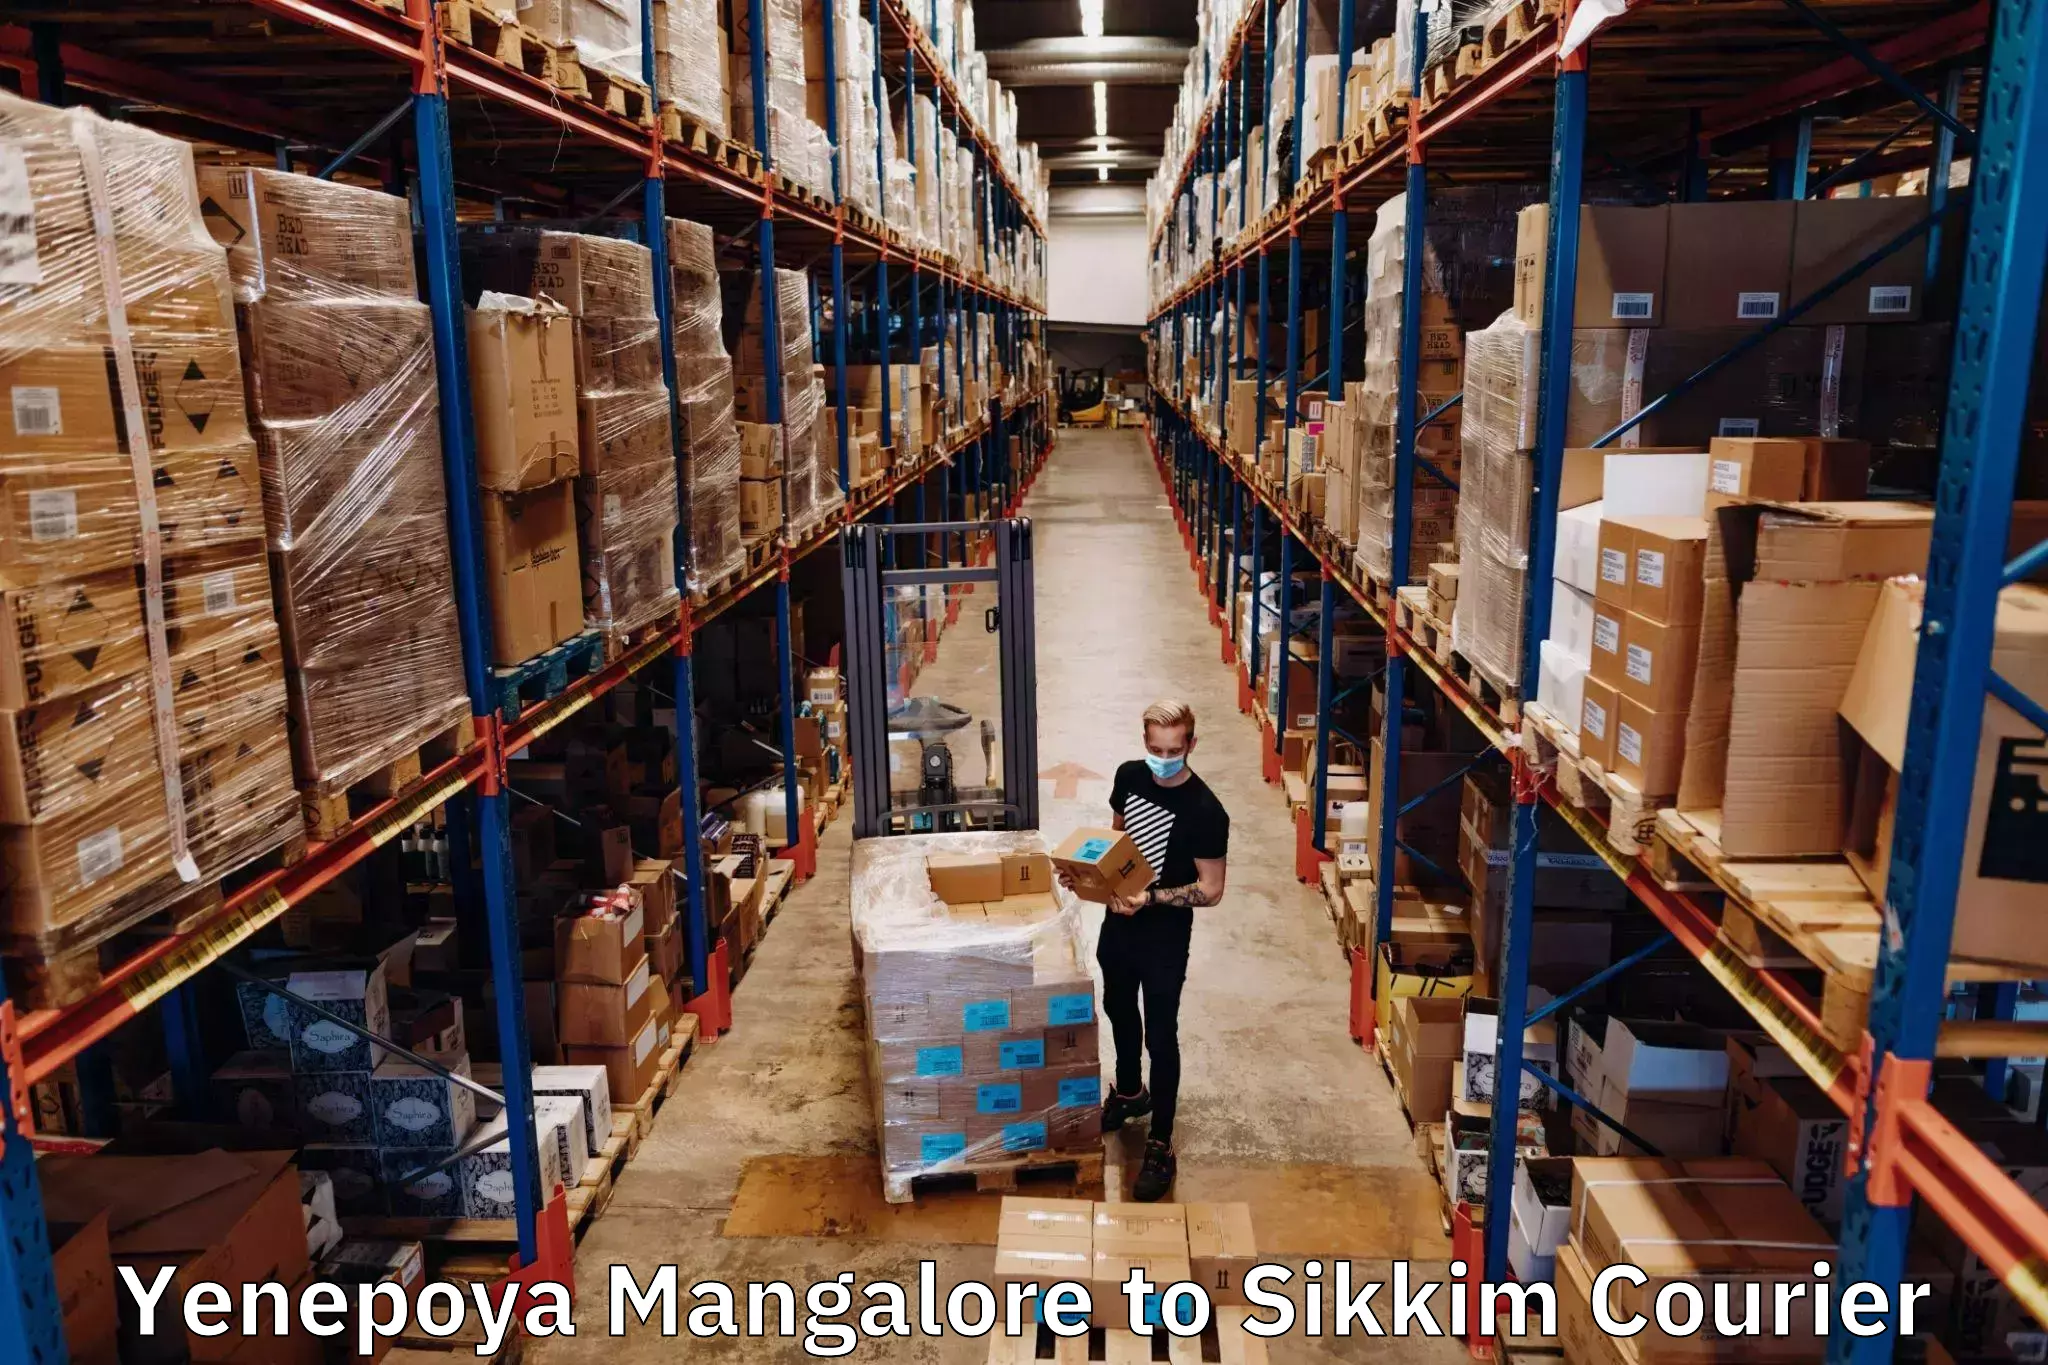 Customized shipping options Yenepoya Mangalore to Gangtok